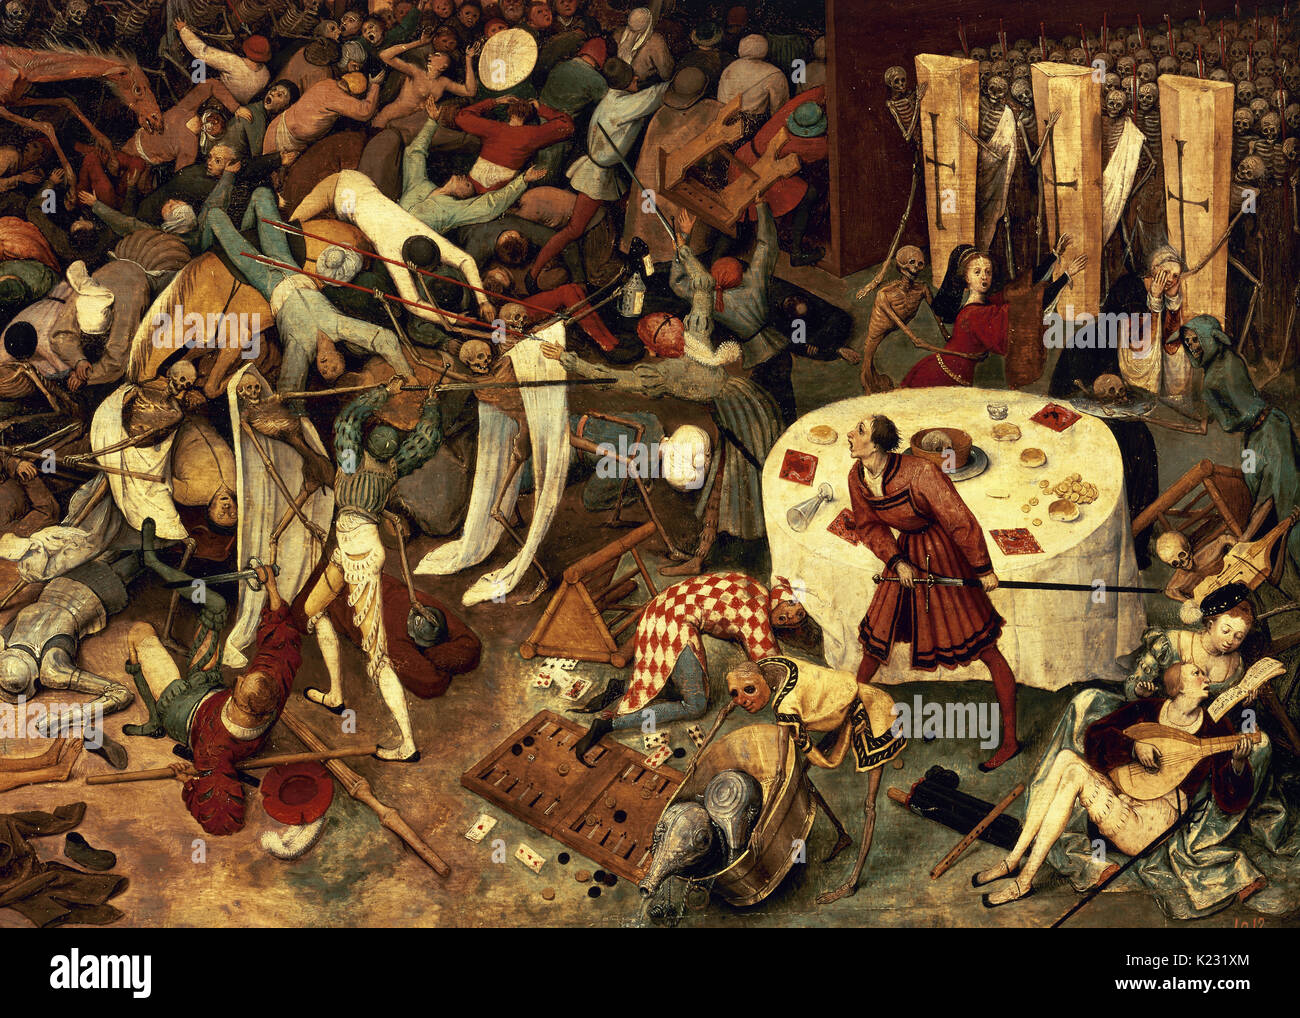 Pieter Brueghel l'ancien (1525-1569). Peintre Russisch. Le Triomphe de la mort, 1562-1563. Musée du Prado. Madrid. L'Espagne. Banque D'Images